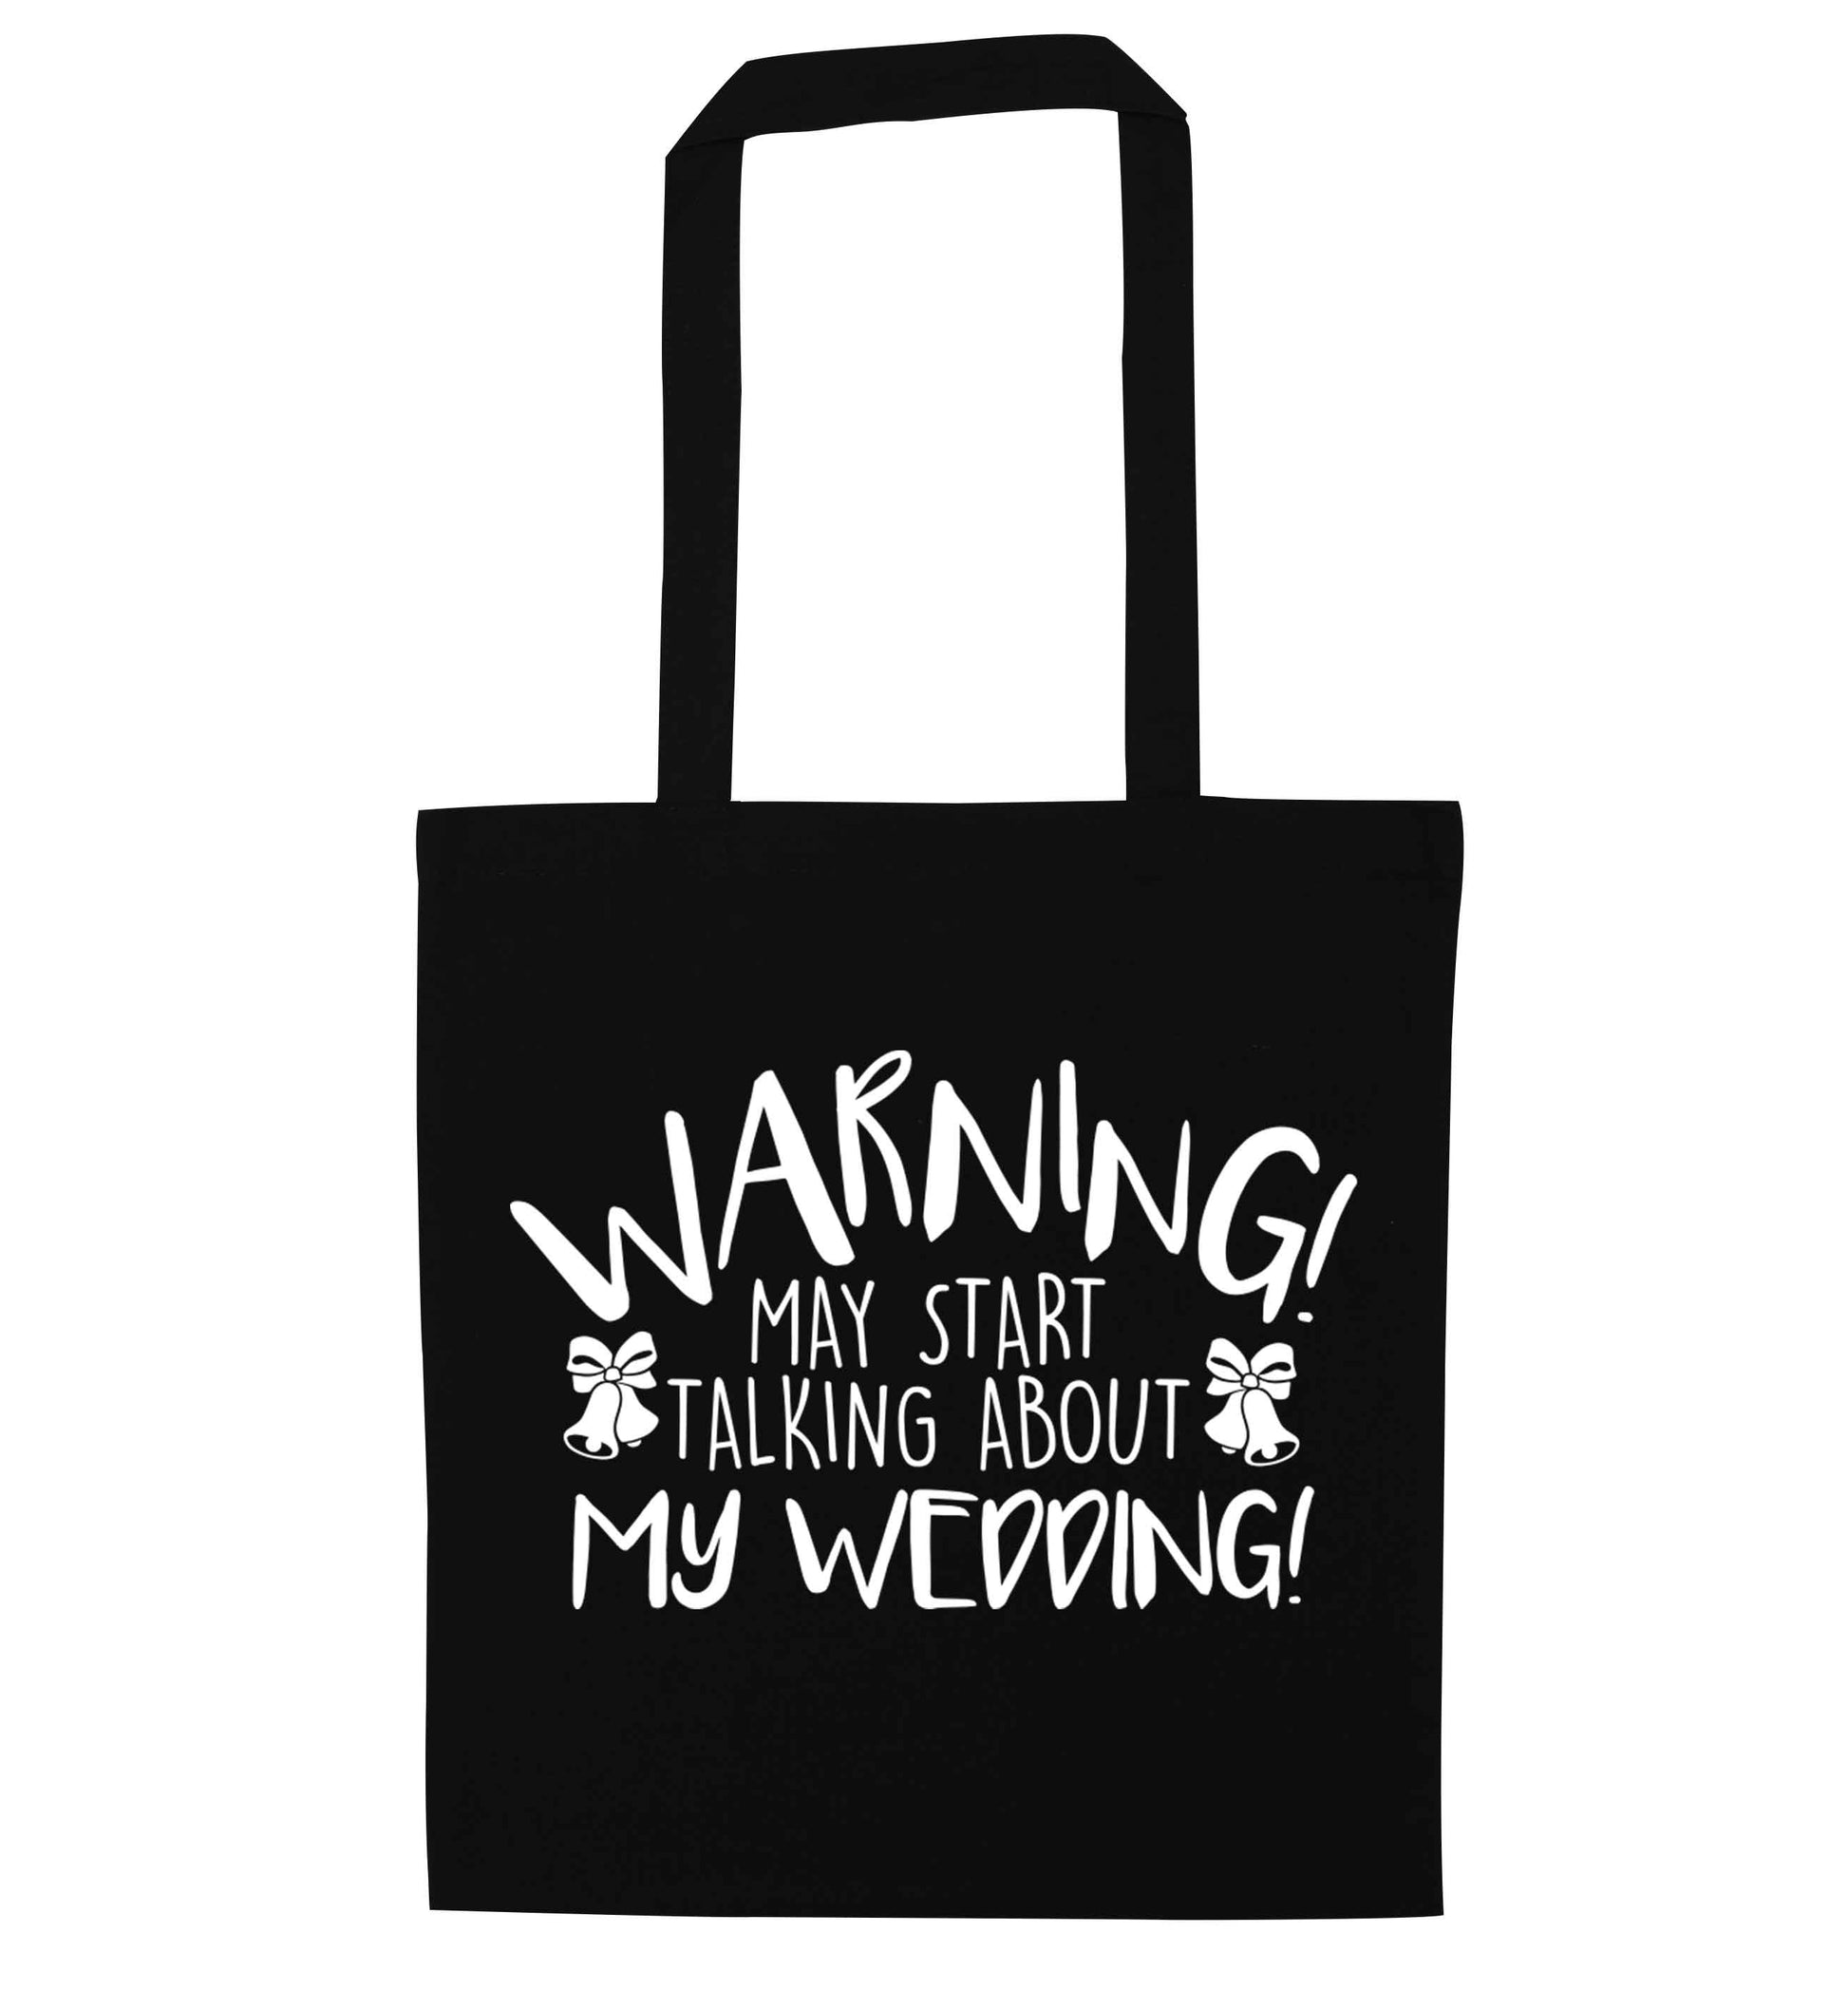 Warning may start talking about my wedding! black tote bag